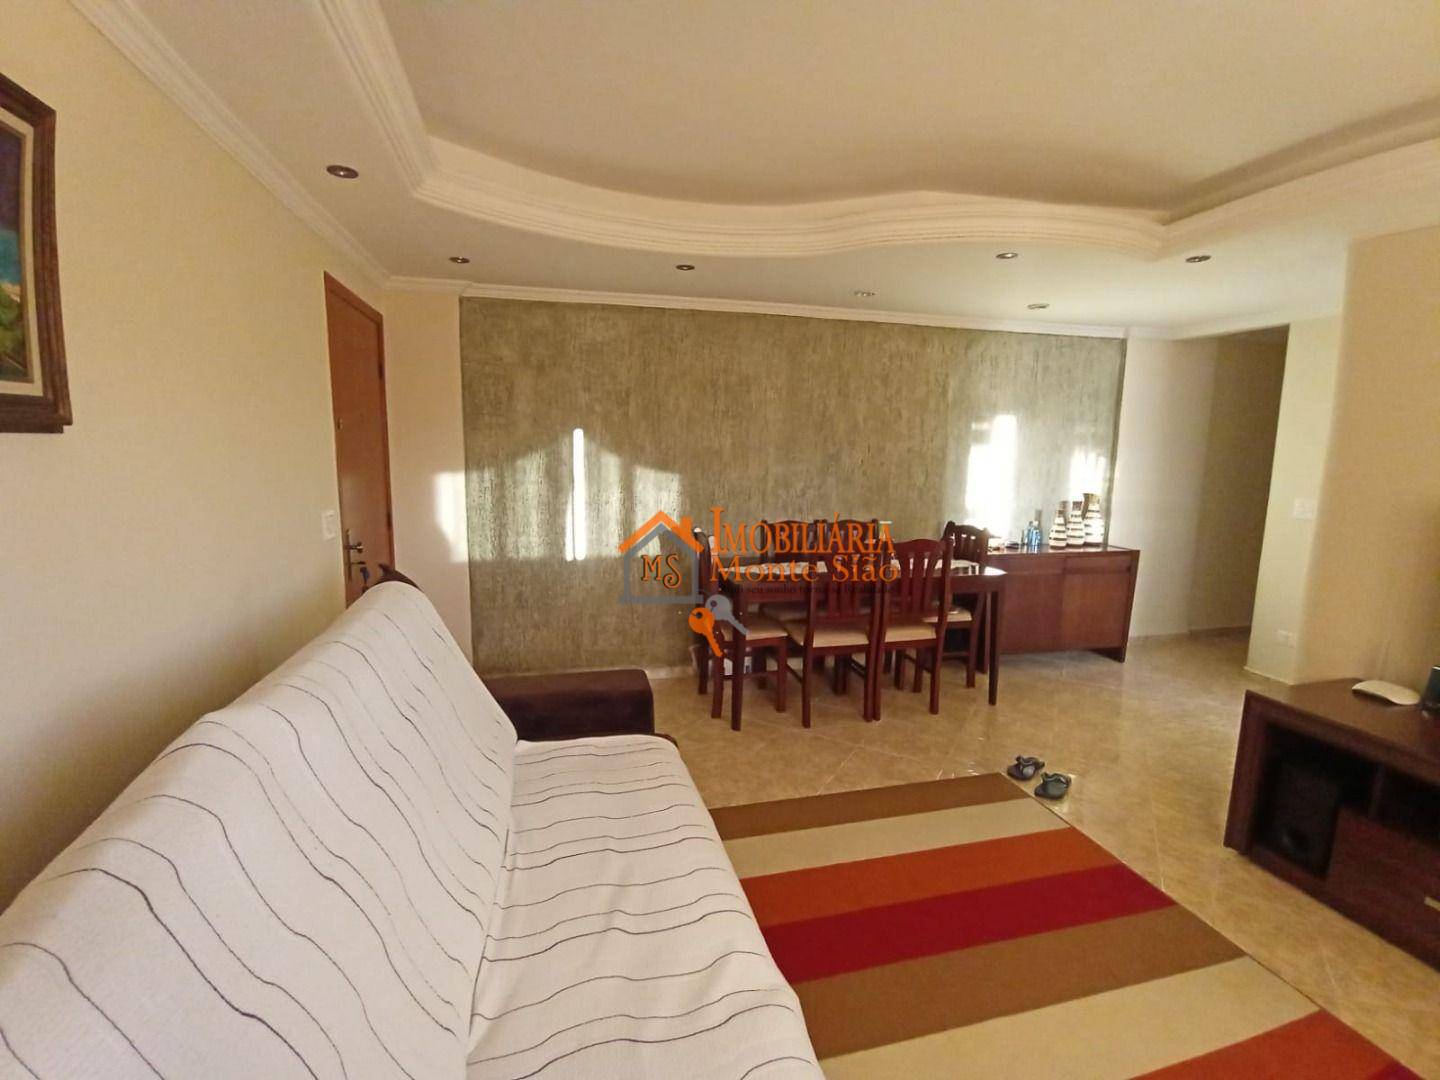 Apartamento com 2 dormitórios à venda, 77 m² por R$ 445.000,00 - Macedo - Guarulhos/SP